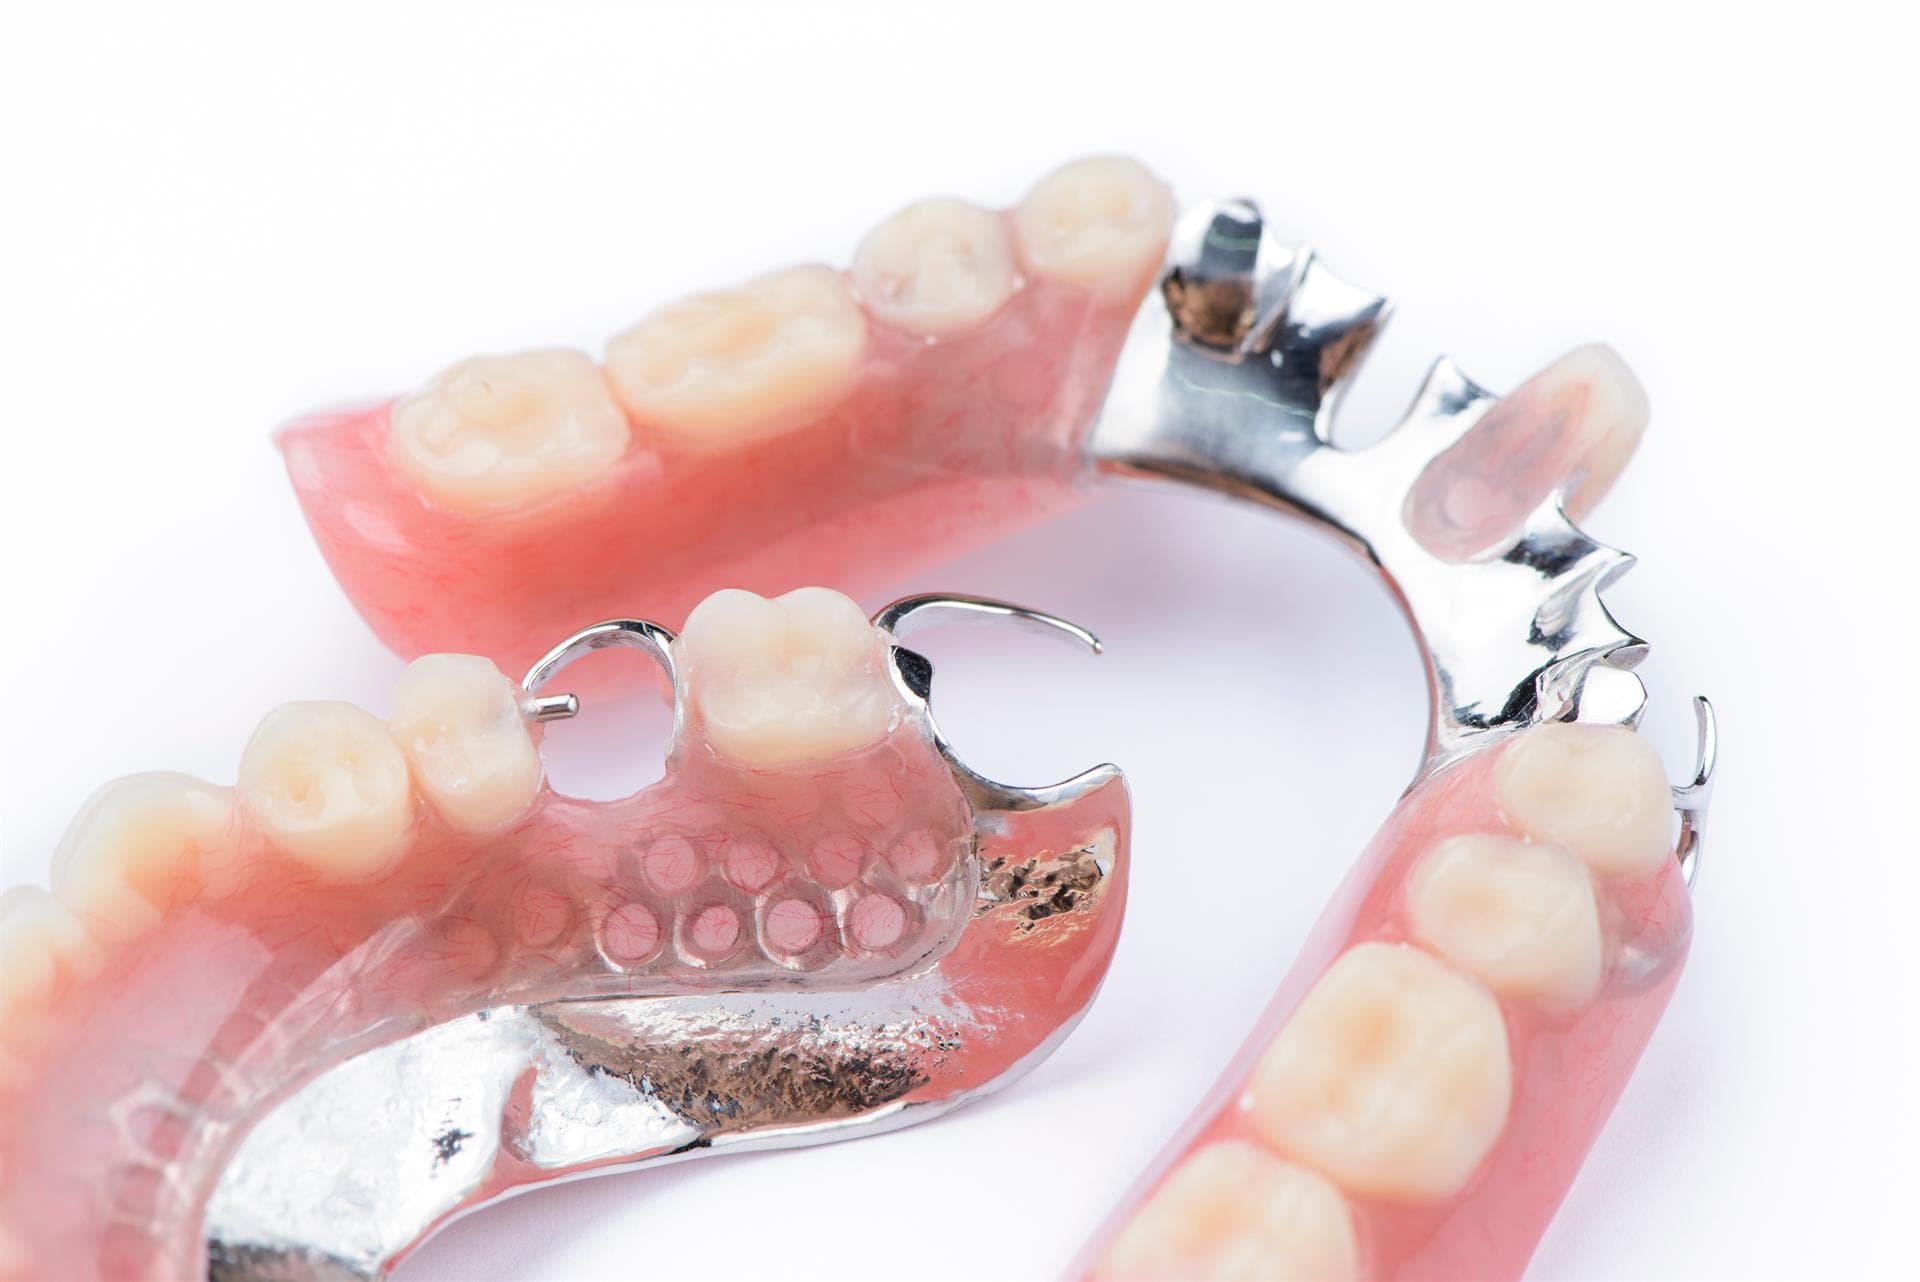 Colocación de prótesis dentales removibles